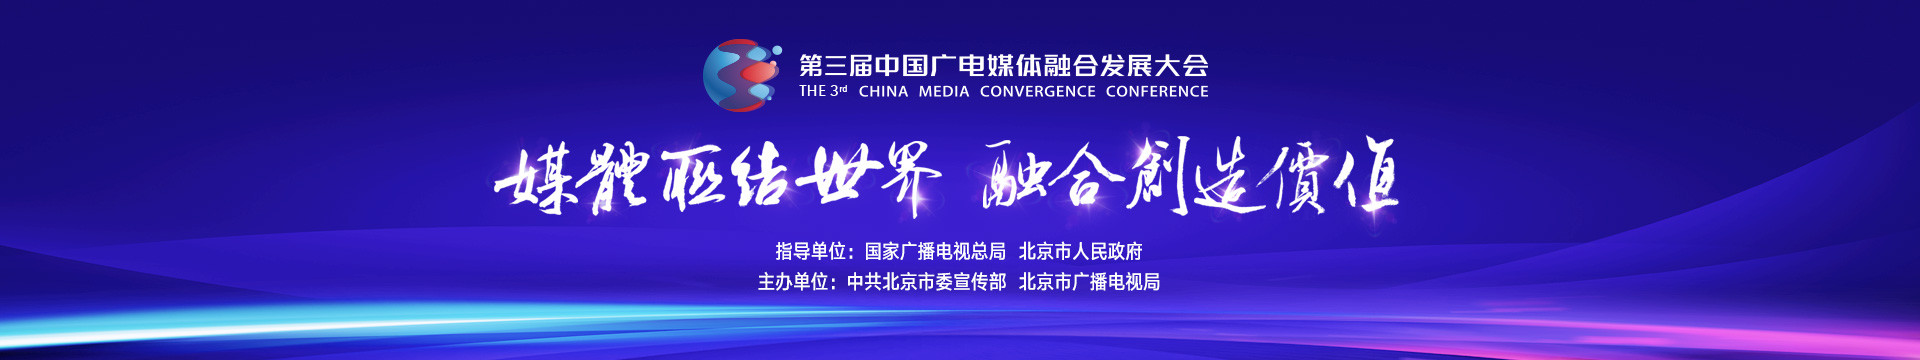 第三屆中國廣電媒體融合發展大會